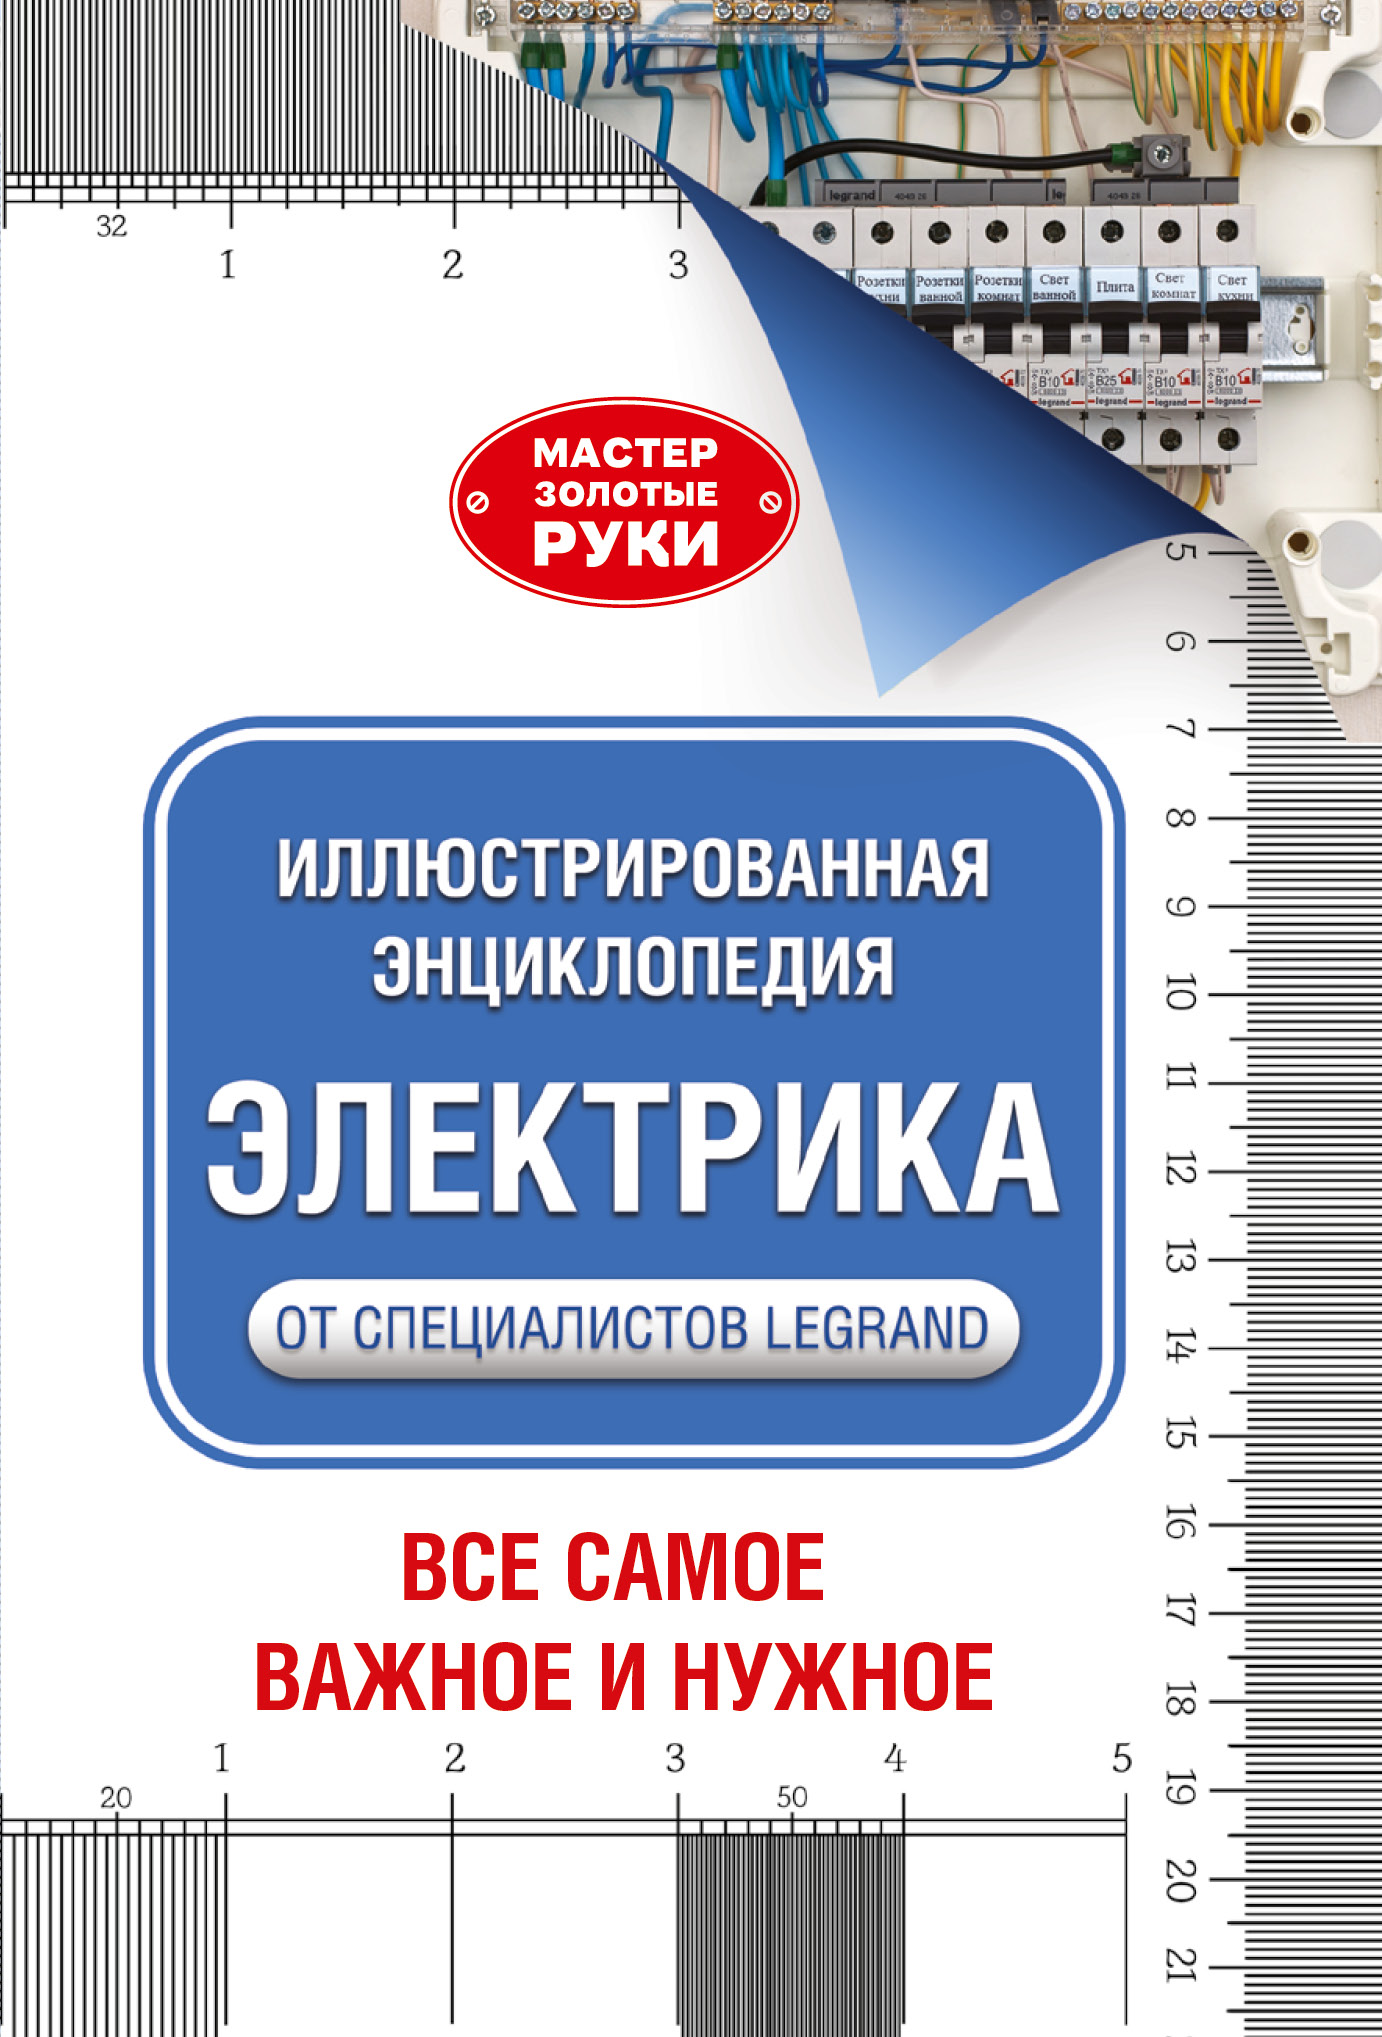 https://cdn.eksmo.ru/v2/ASE000000000720995/COVER/cover13d.jpg